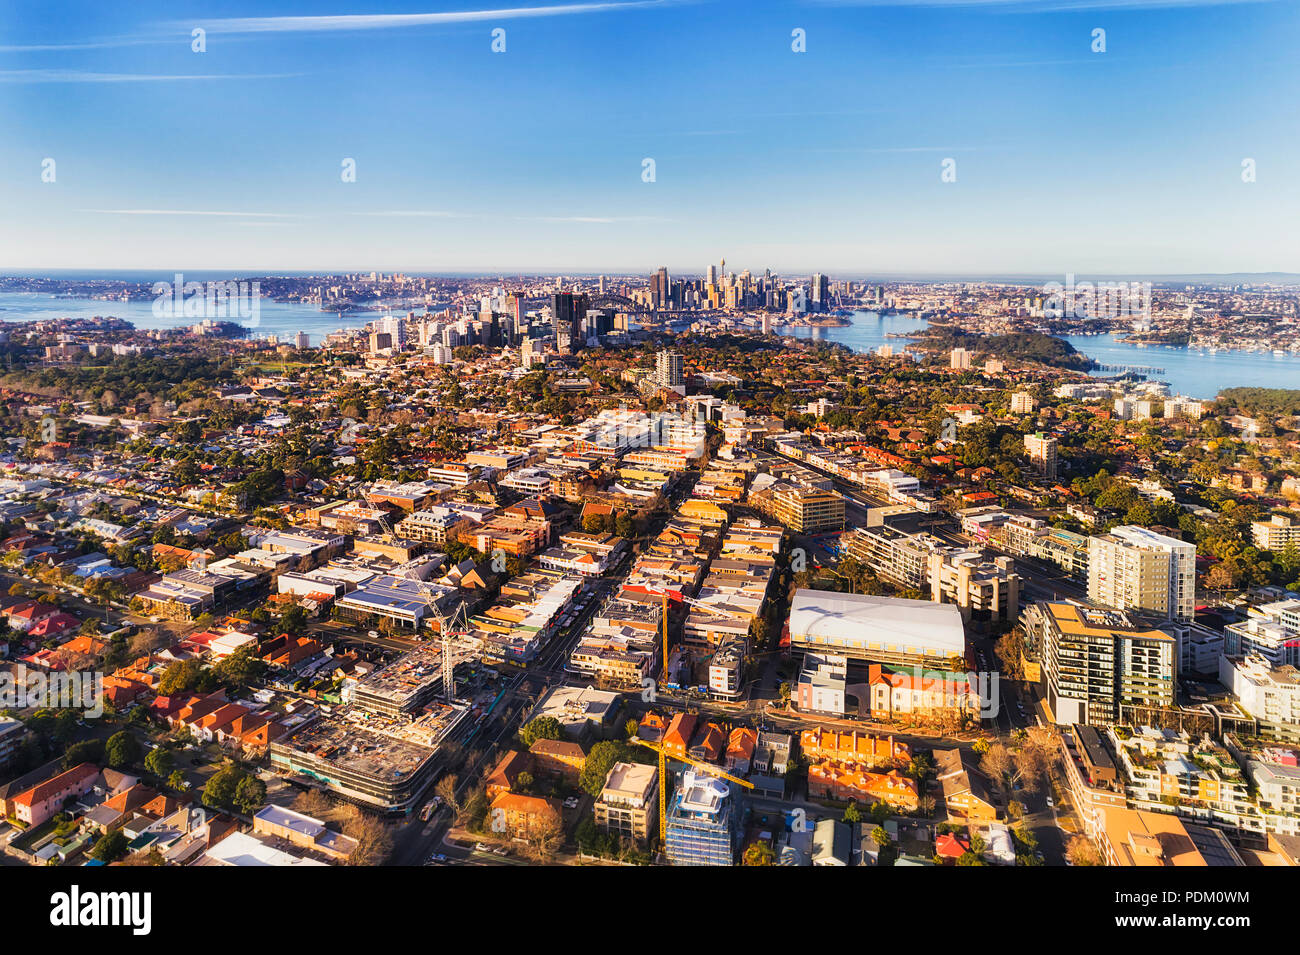 Lokale Wohngebiet Vorstadt in der inneren Stadt Sydney am Ufer des Hafens von Sydney gesehen von oben in der Luft an einem sonnigen Tag mit CBD Wahrzeichen. Stockfoto